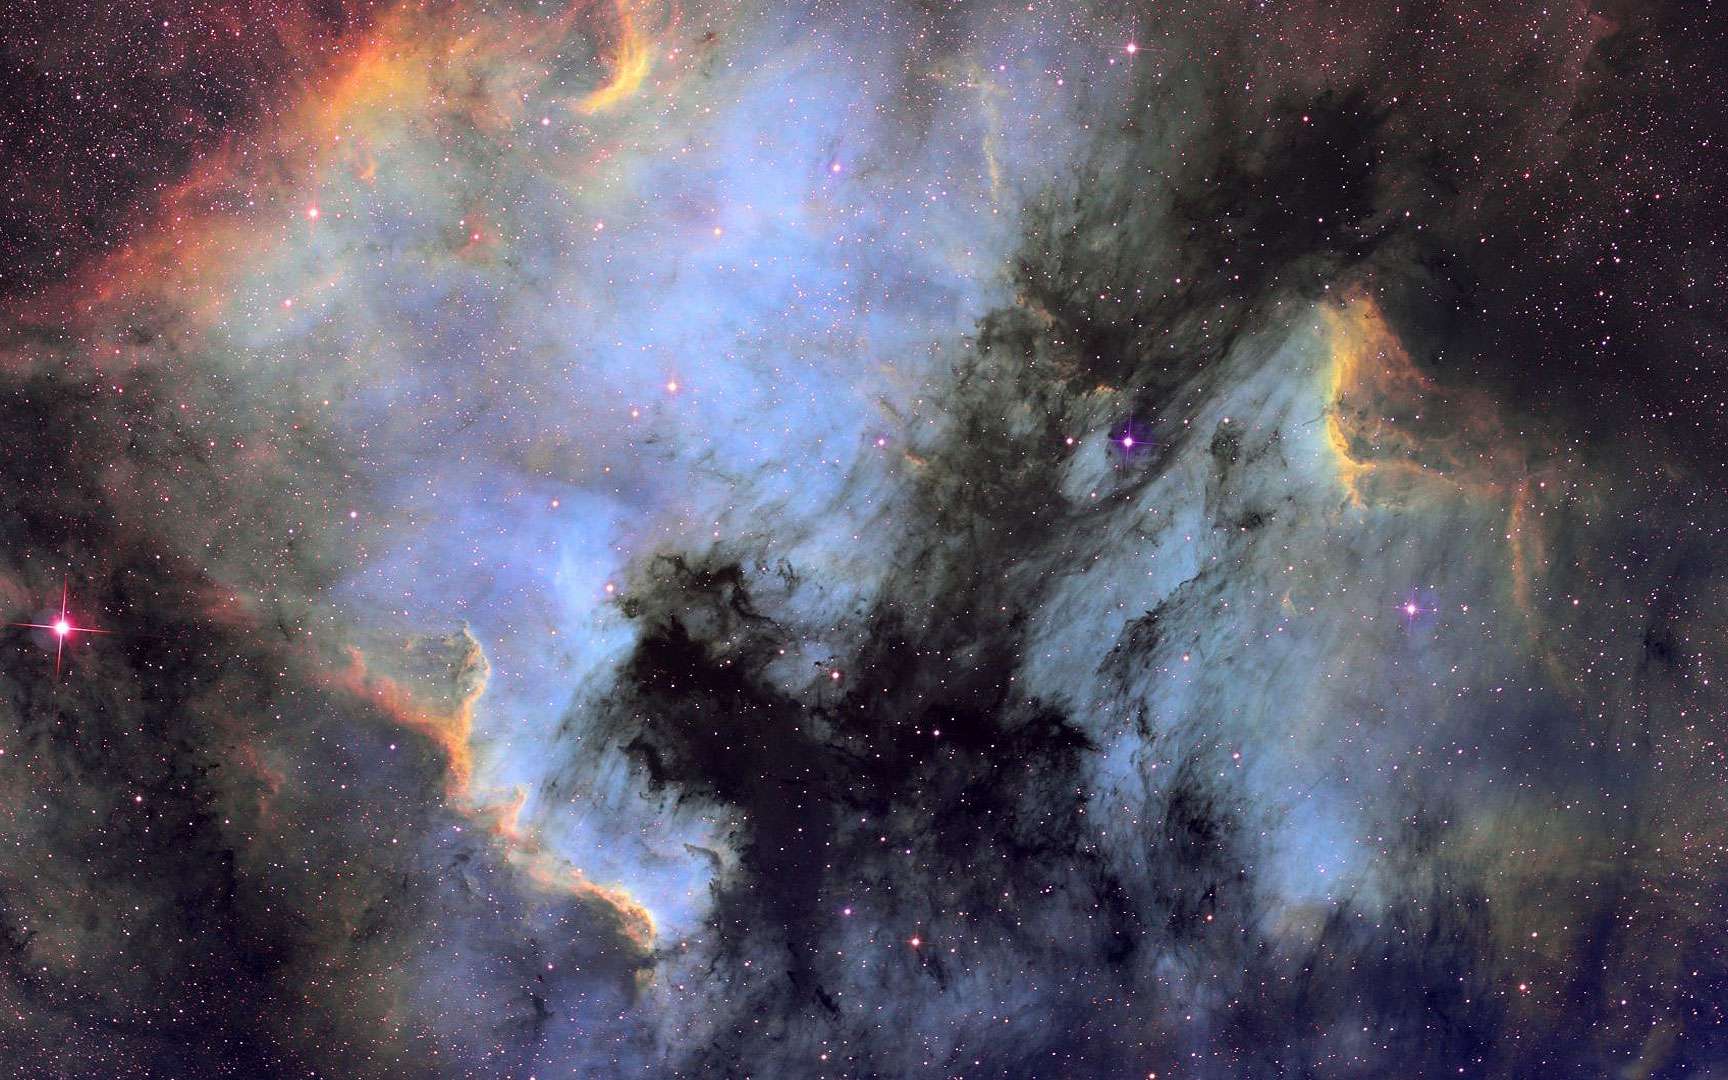 Nebuleuse de l'Amerique et du Pelican. Voici une région de la constellation du Cygne, avec la nébuleuse de l'Amérique et la nébuleuse du Pelican , réalisée avec une lunette astronomique Takahashi Fsq106, une camera astro SBIG STL11K, des filtres spéciaux Ha, OIII et SII et avec plus de 19 h de temps de pose.